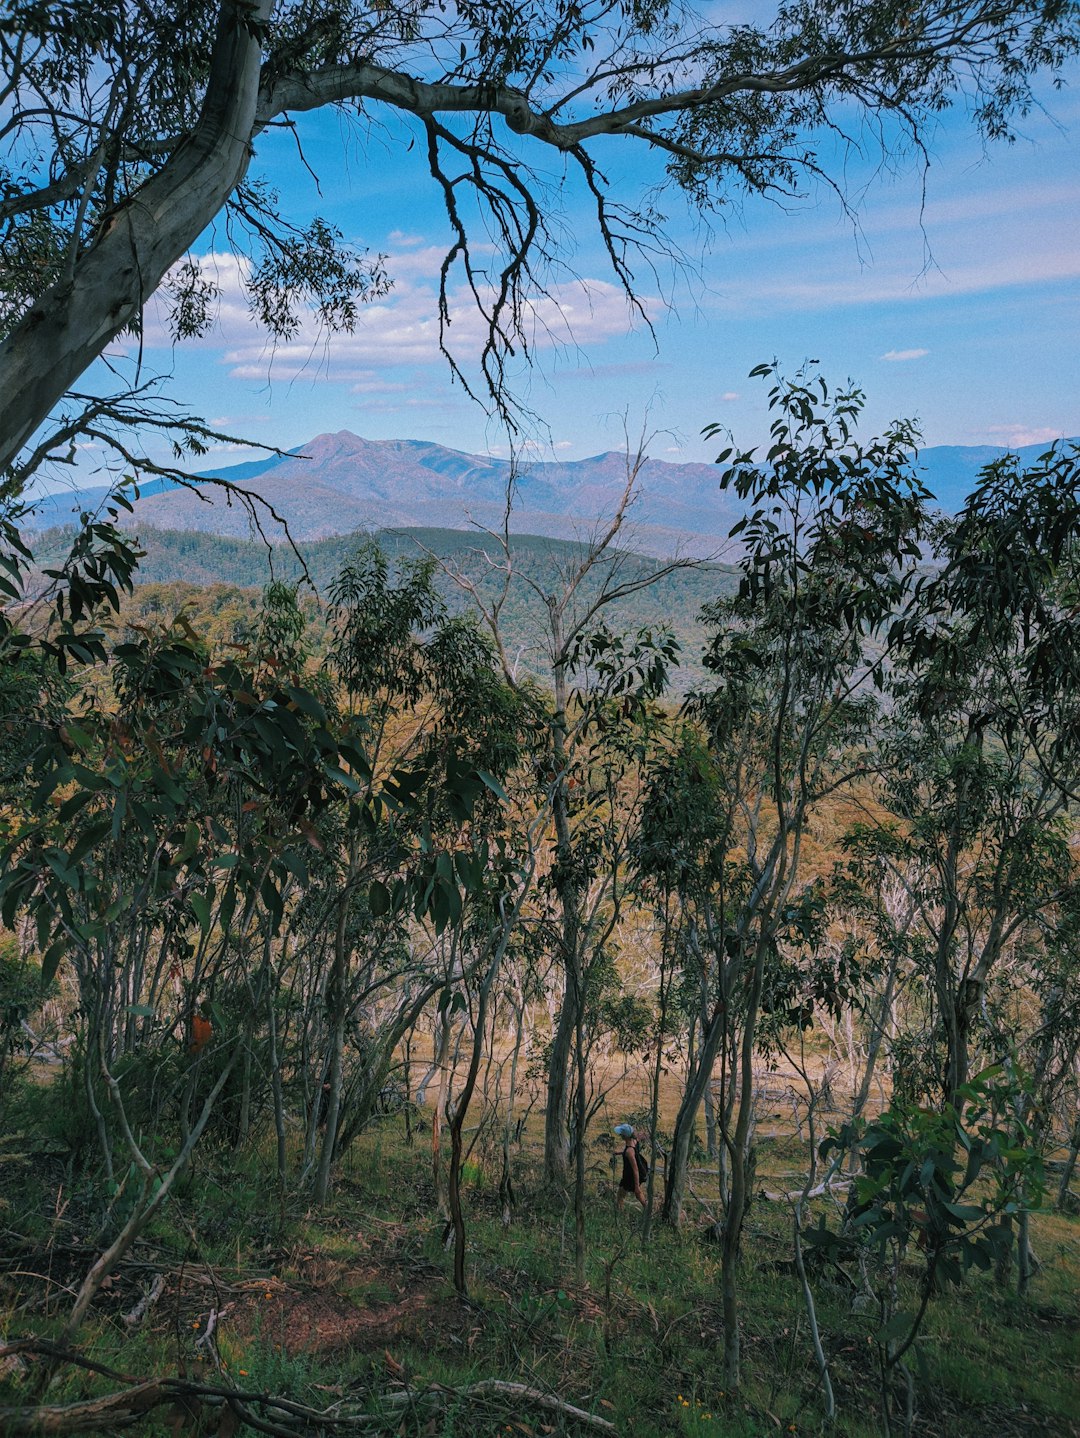 Nature reserve photo spot Howqua Hills VIC Australia